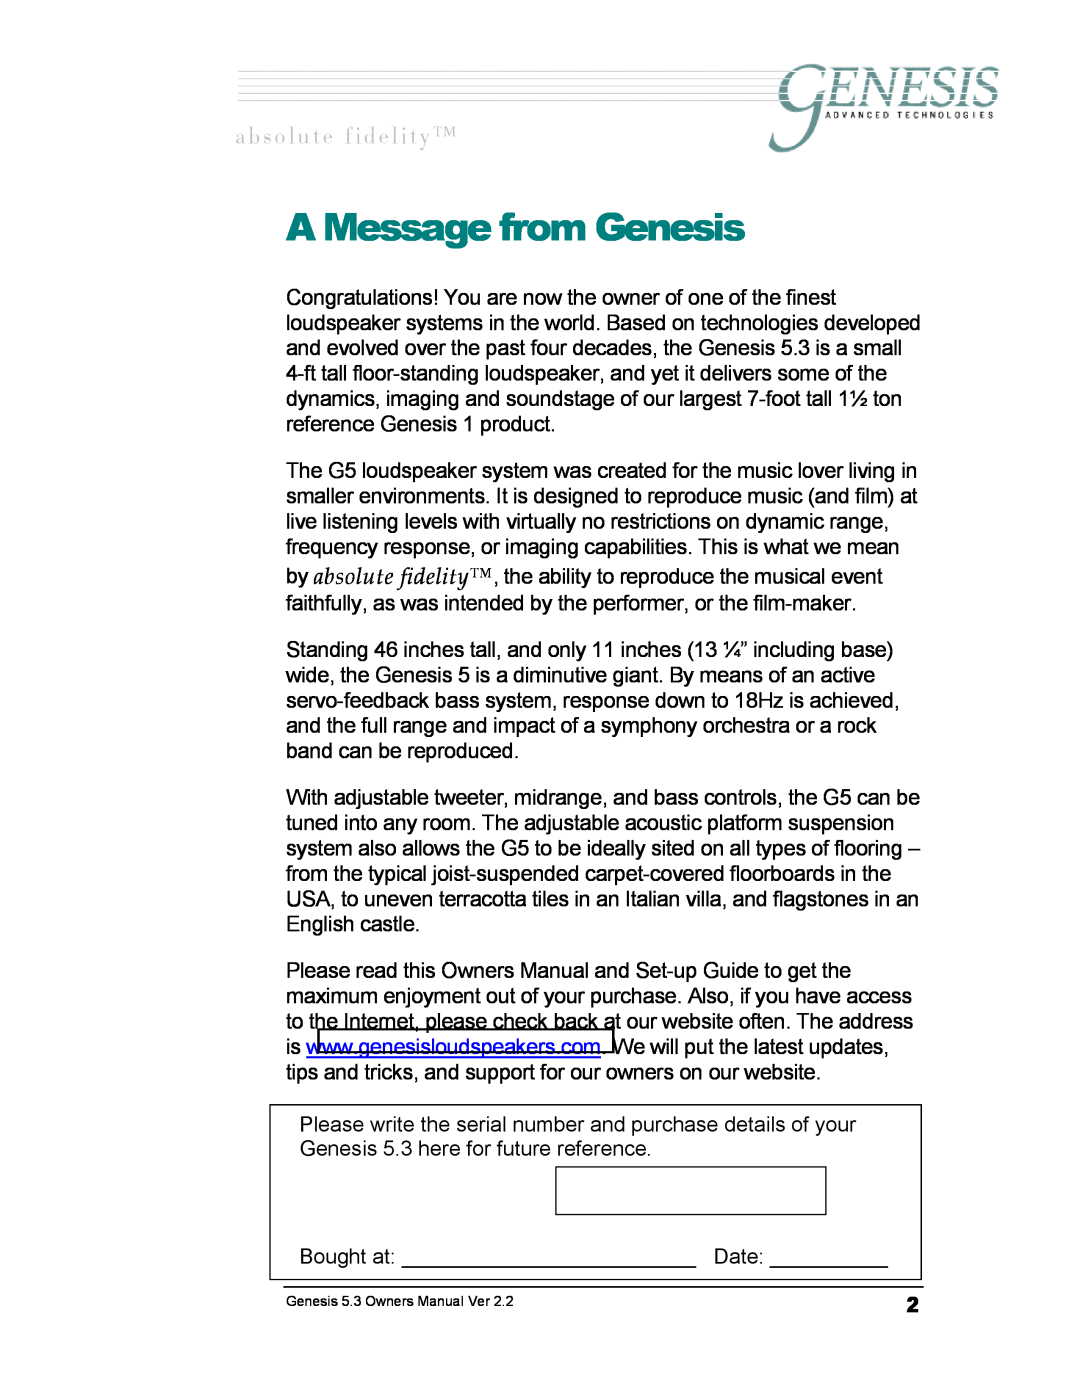 Genesis Advanced Technologies GENESIS 5.3 manual A Message from Genesis, ~ Ä ë ç ä ì í É = Ñ á Ç É ä á í ó 